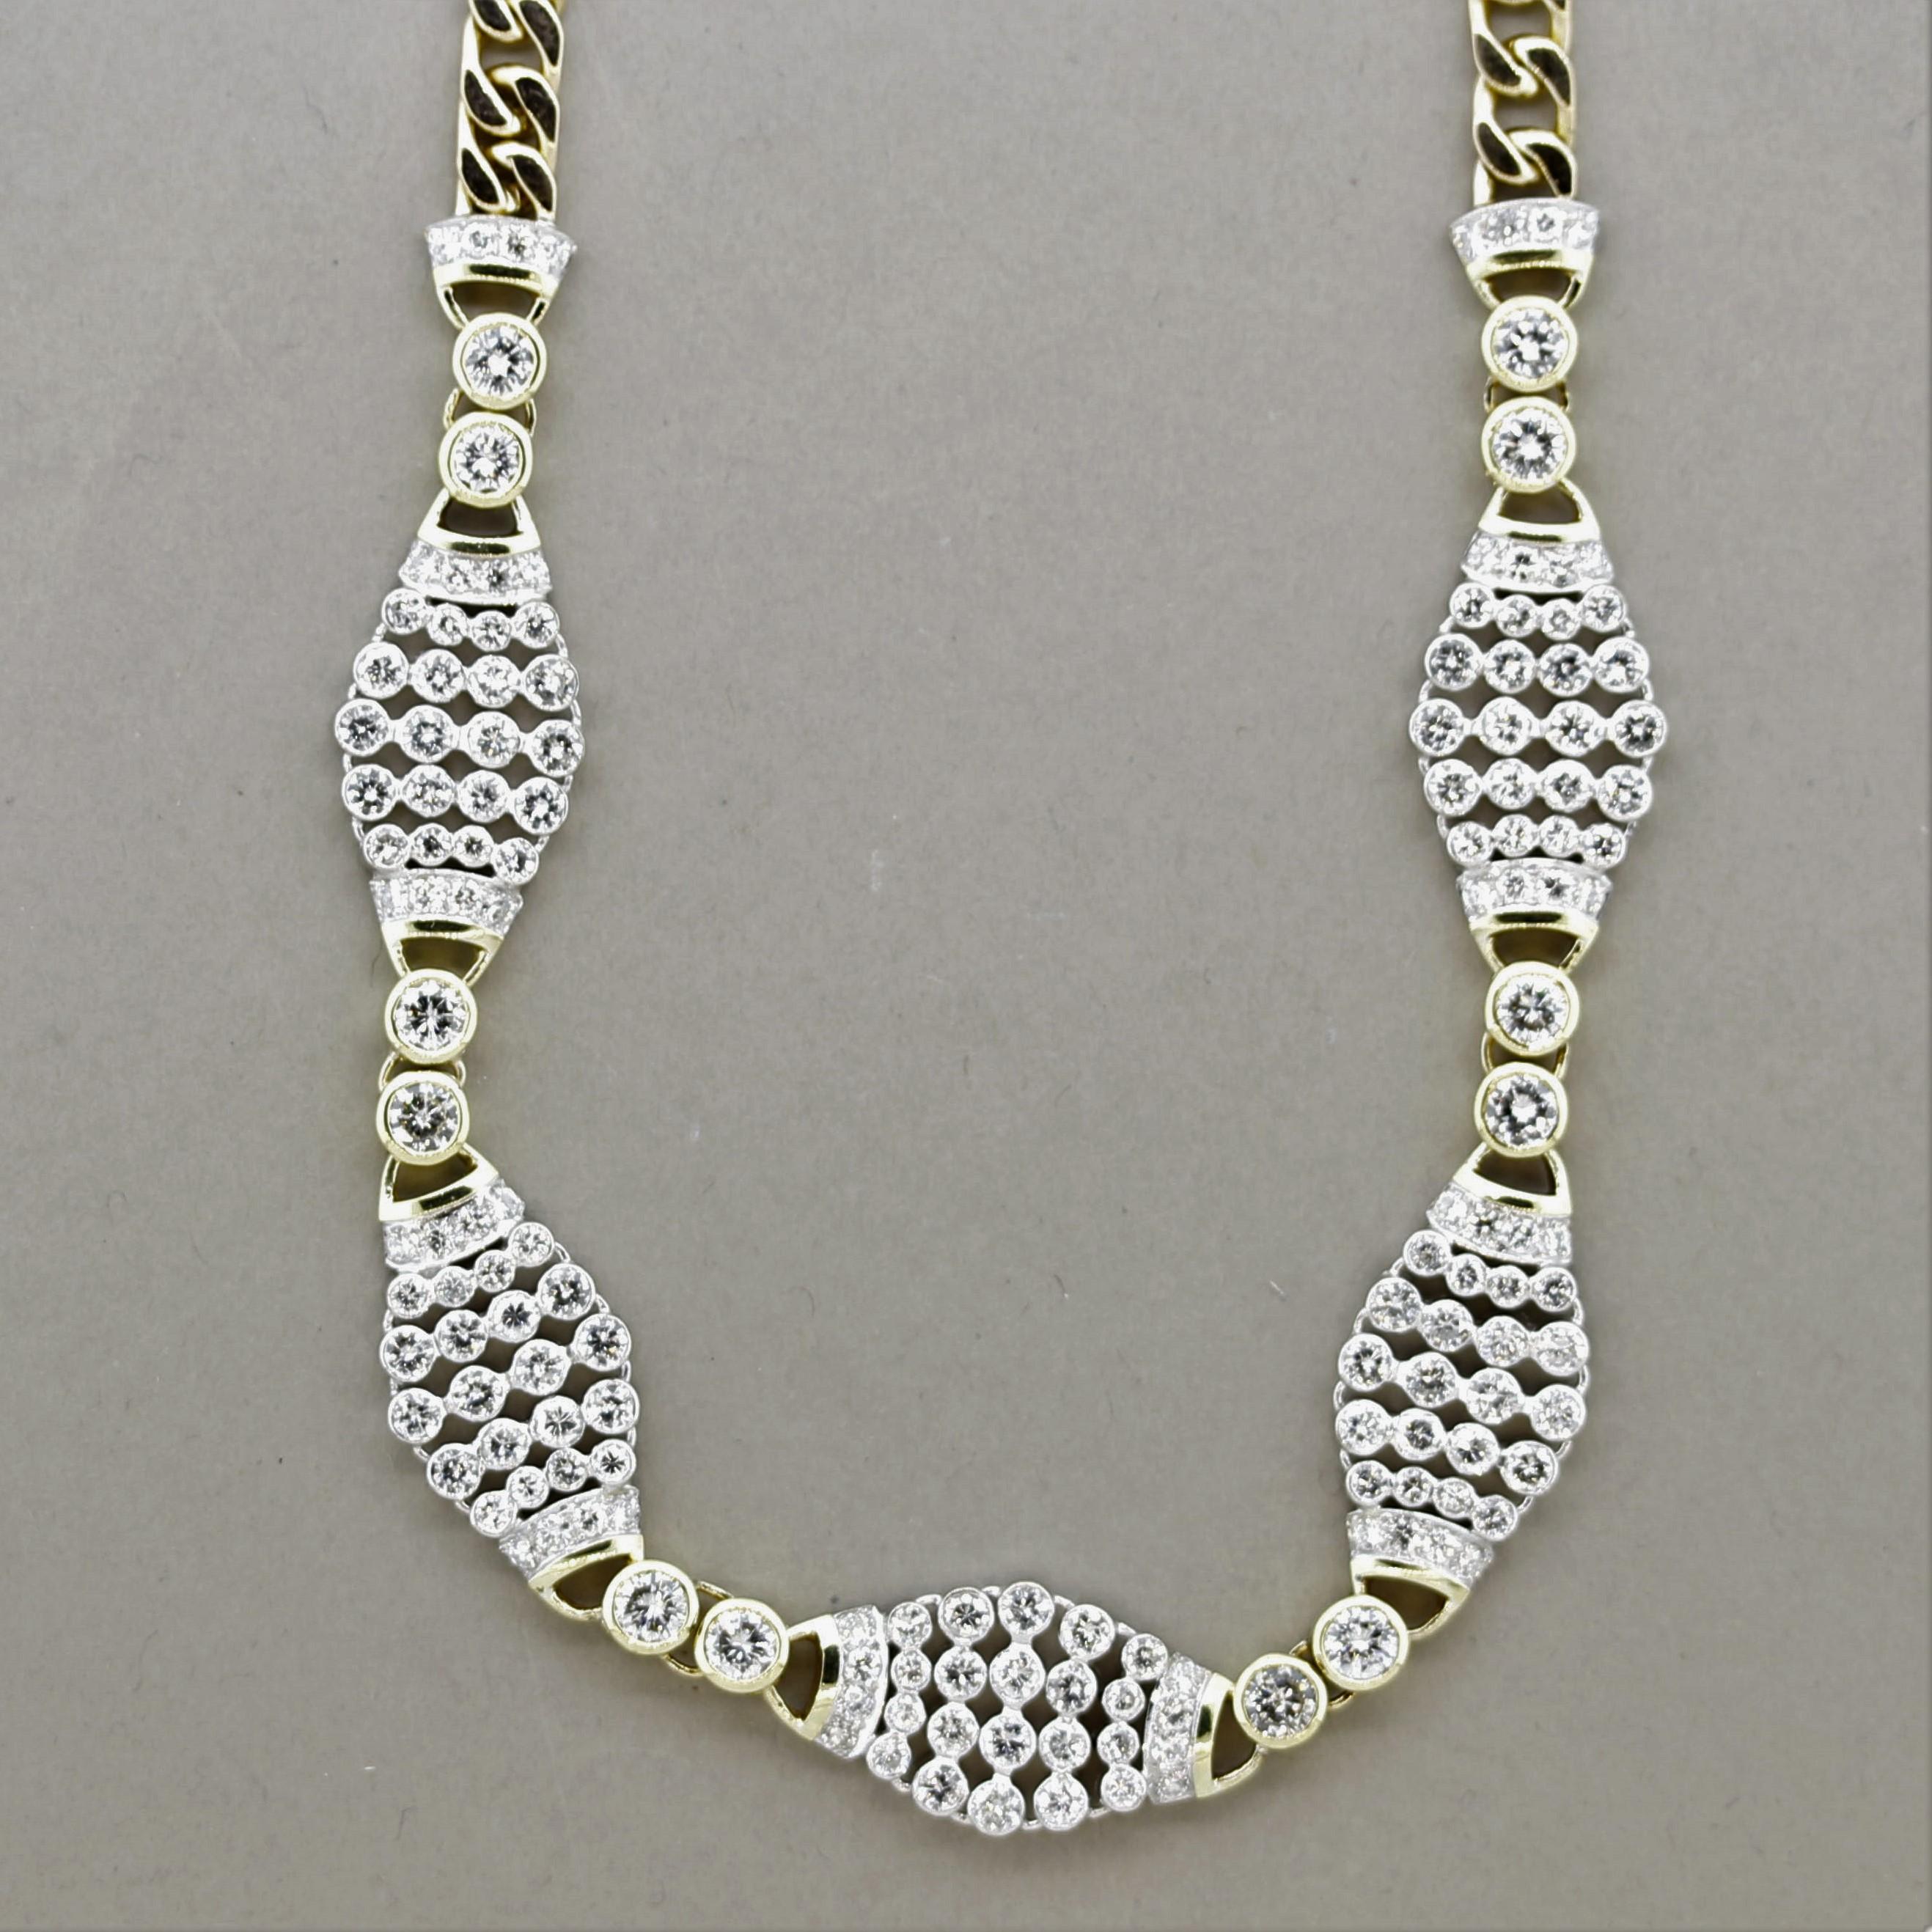 Eine einzigartige und stilvolle Halskette! Das Collier ist mit 7,90 Karat großen und feinen runden Diamanten im Brillantschliff besetzt, die in stilvollen Mustern um das Collier herum gefasst sind. Sie ist mit einem kubanischen Gliedermuster